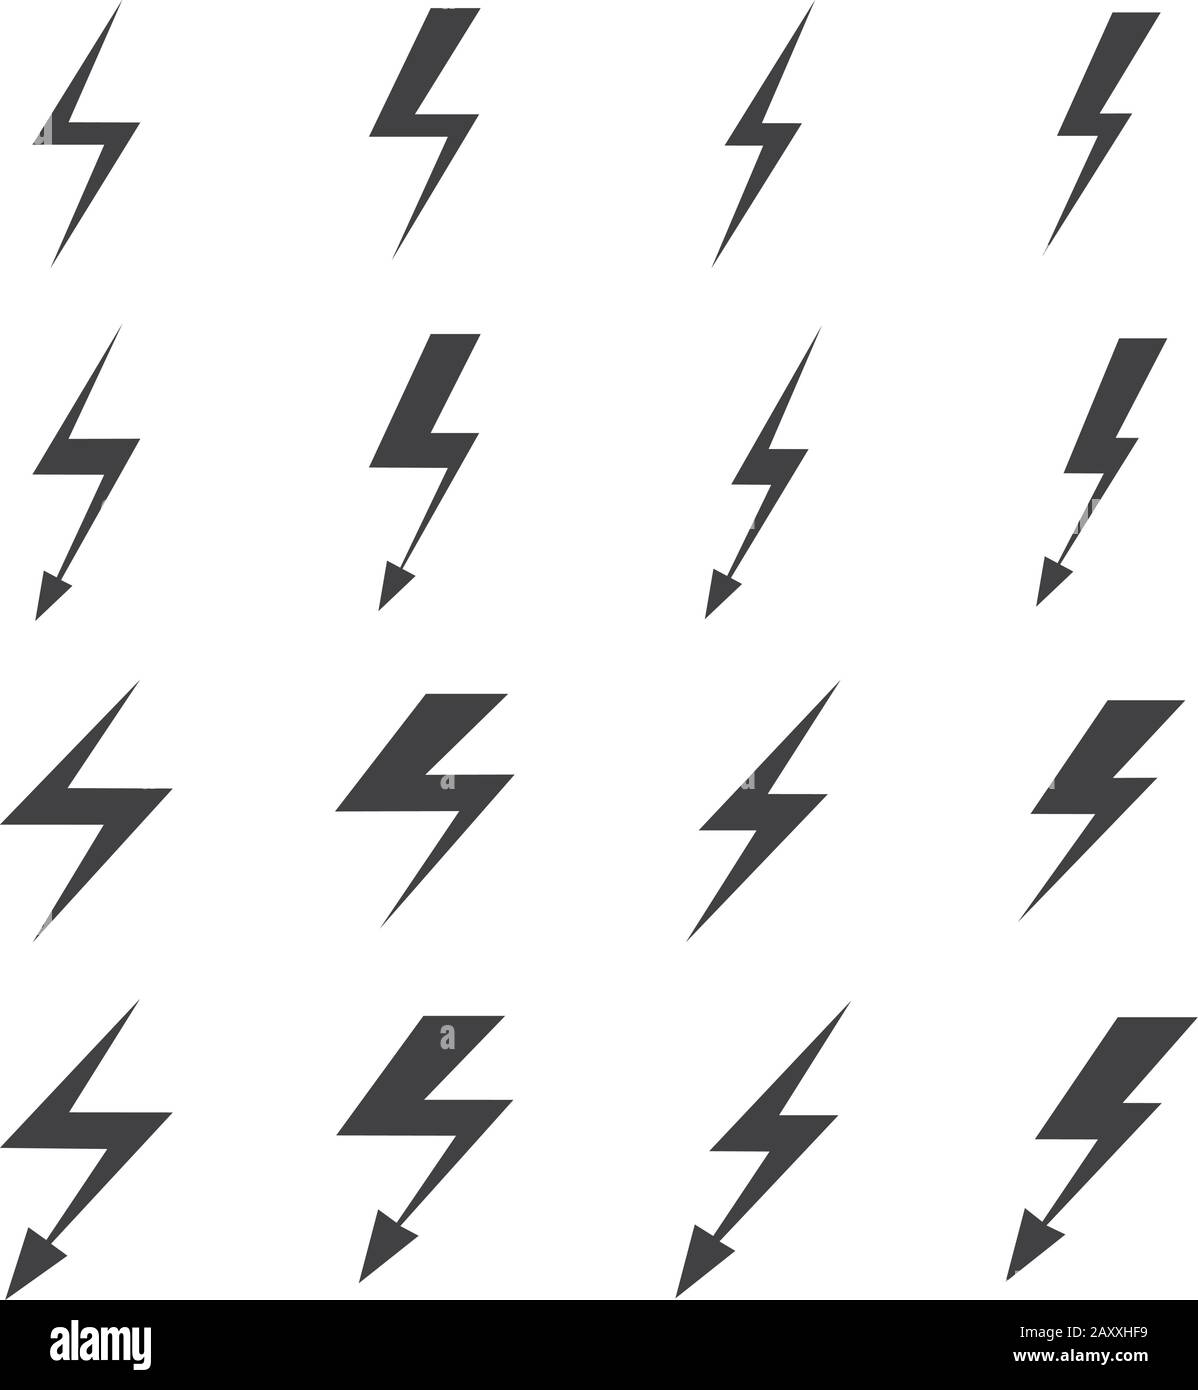 Lightning vector signs. Lightning bolt icons, thunder bolt symbols or flash pictograms Stock Vector